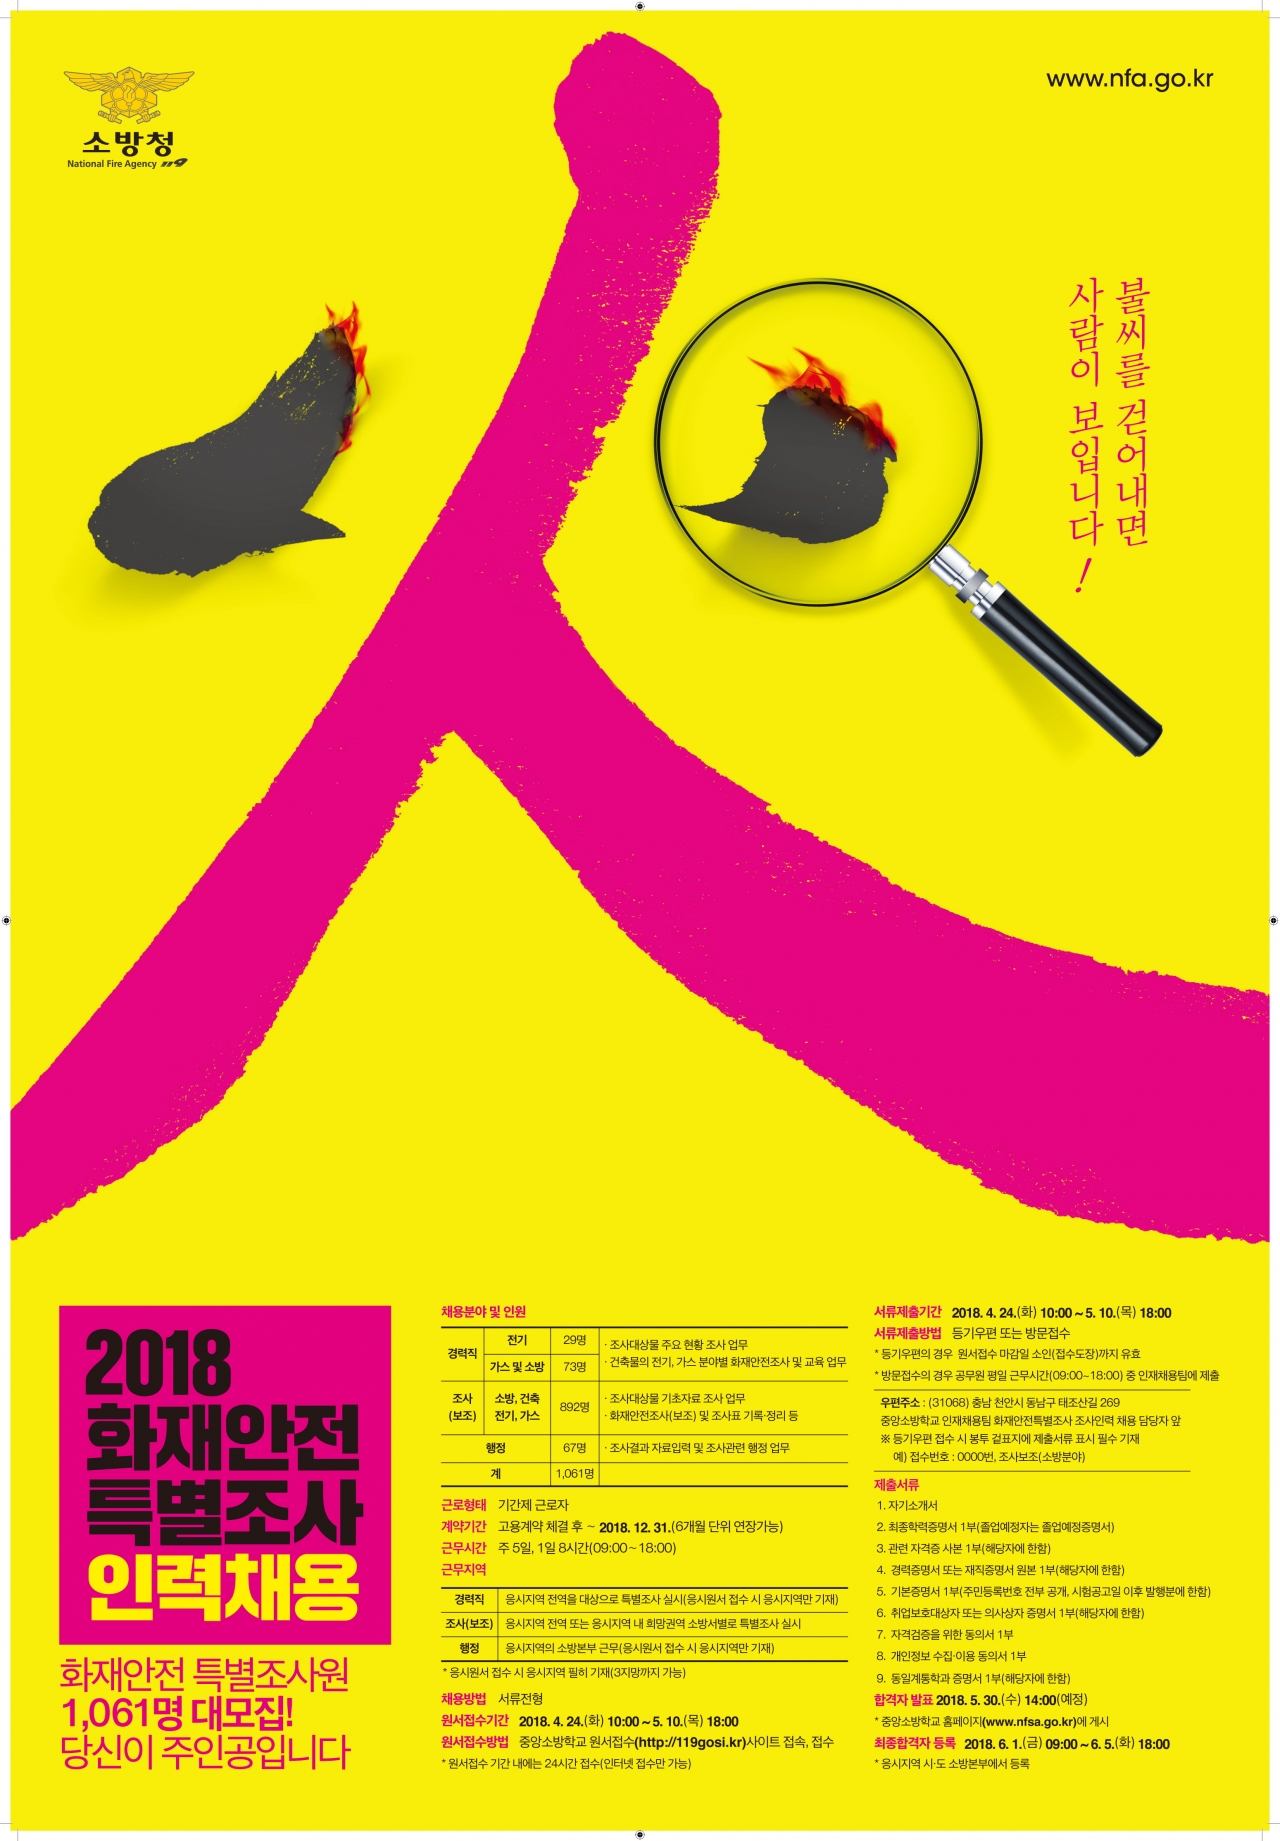 2018화재안전특별조사 인력채용 포스터 / 충북소방본부 제공